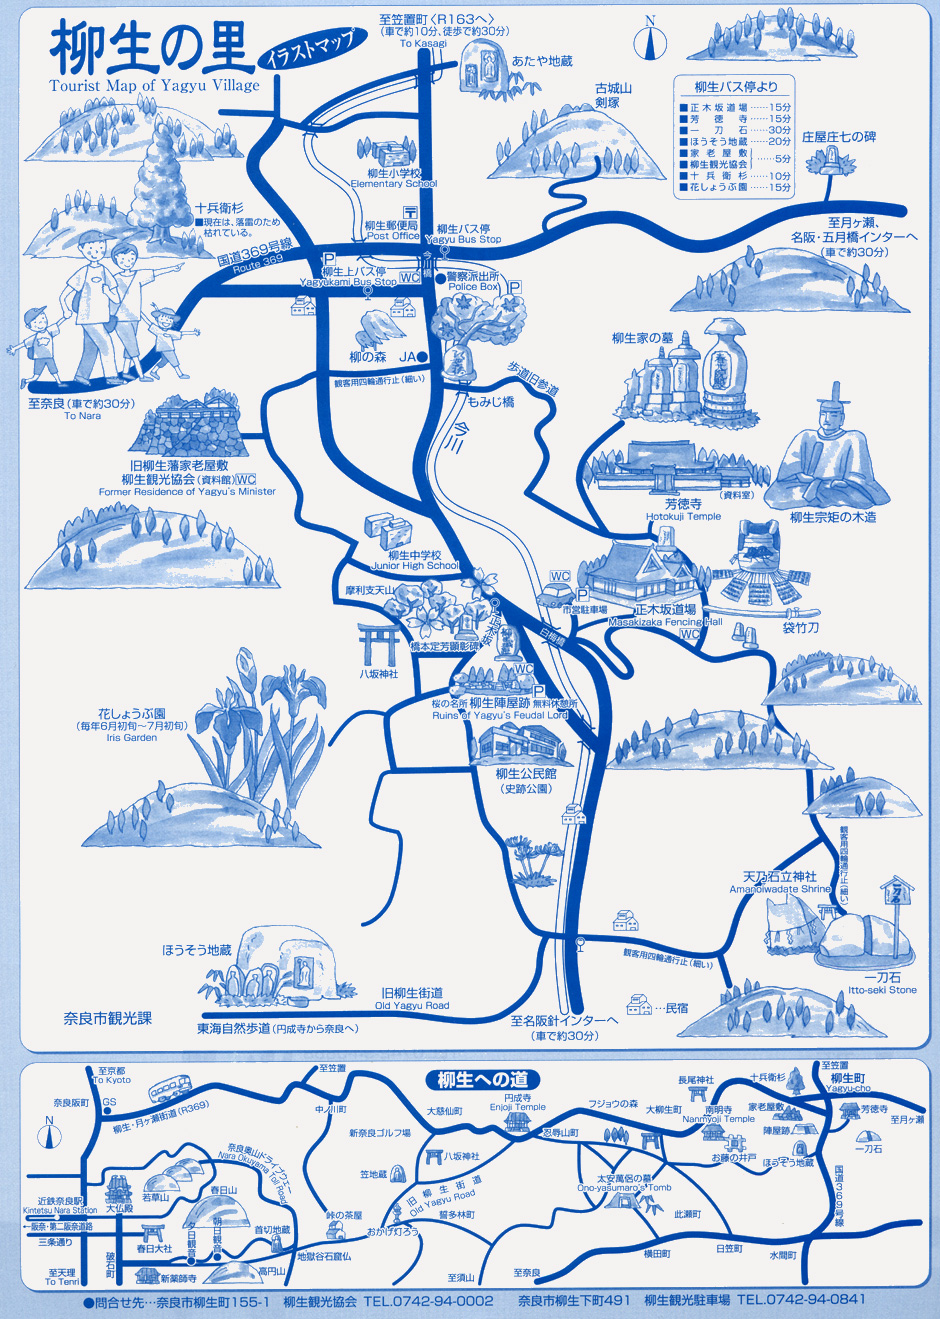 Tourist Map of Yagyu Village